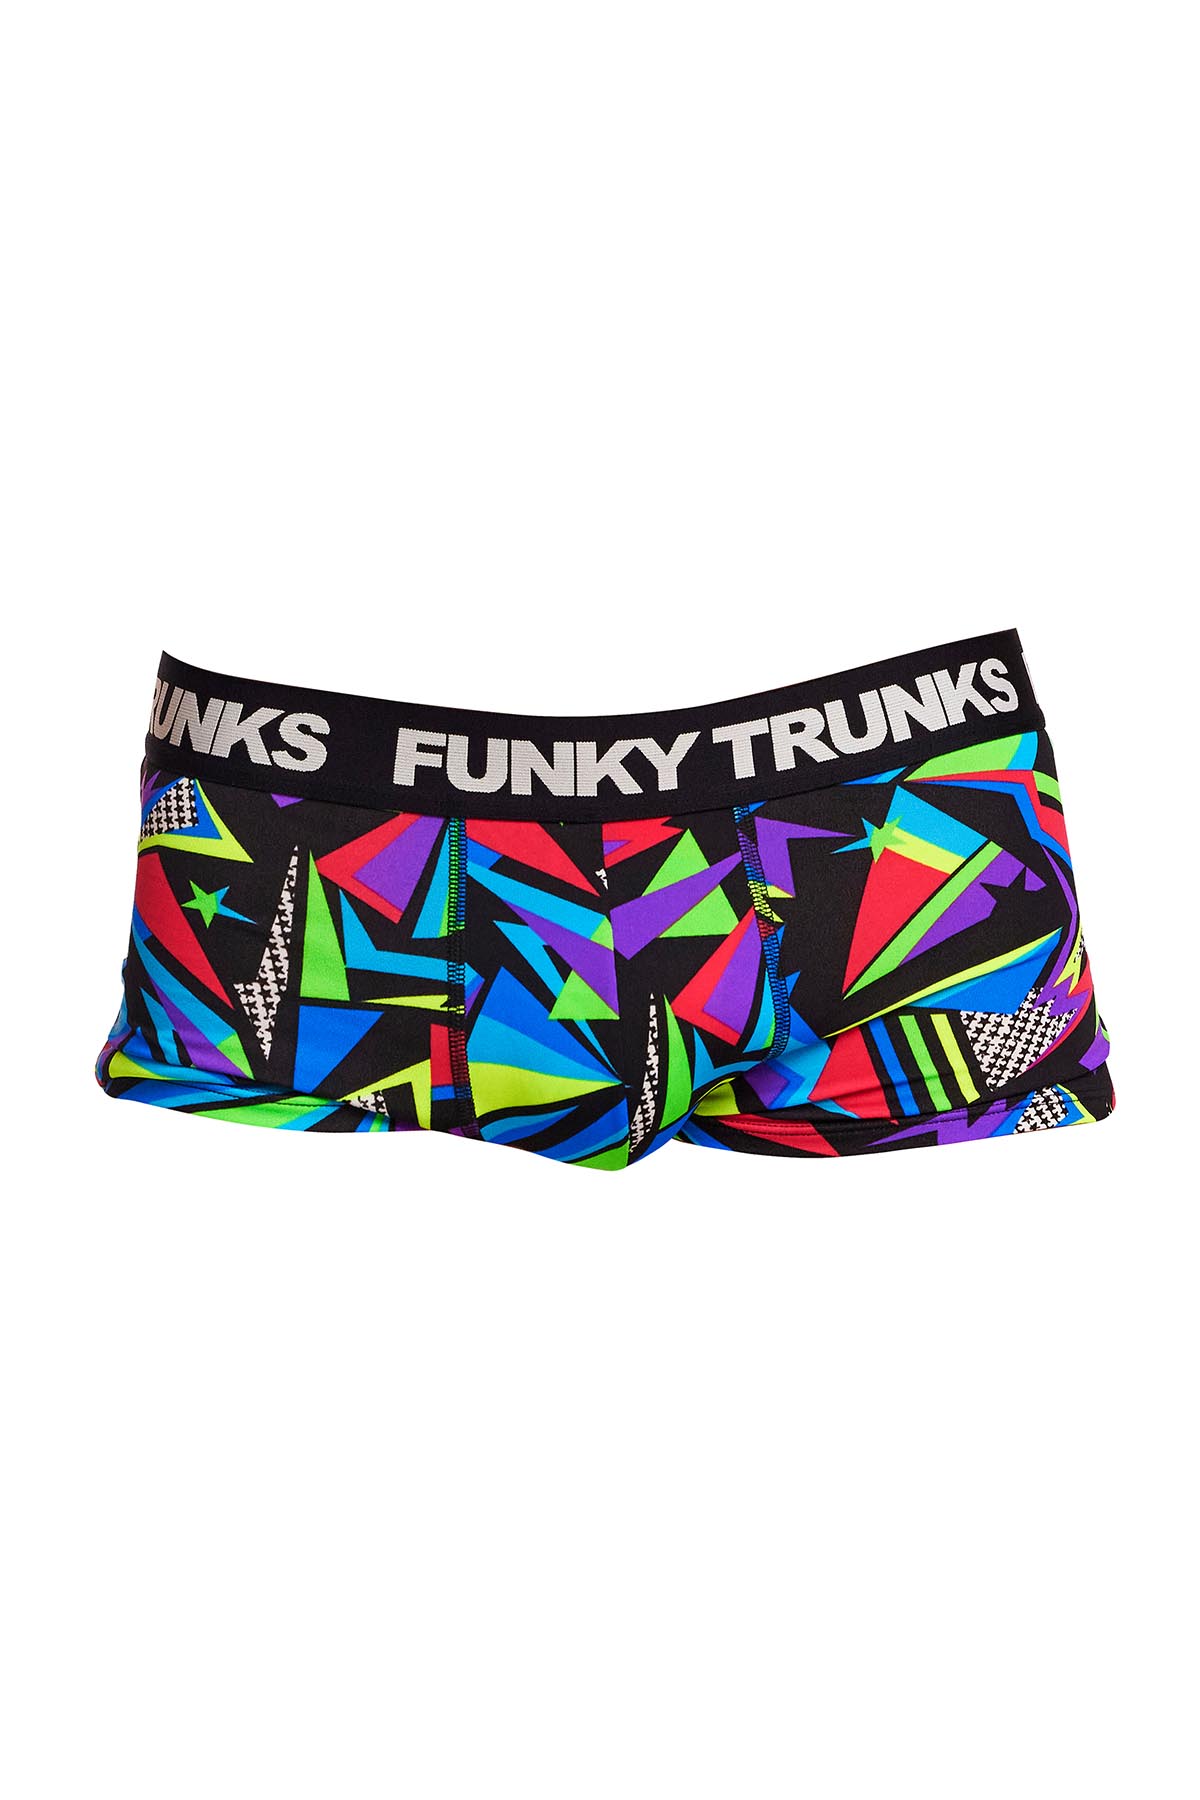 Funky Trunks Underwear Trunks, Beat It, FT50M71611